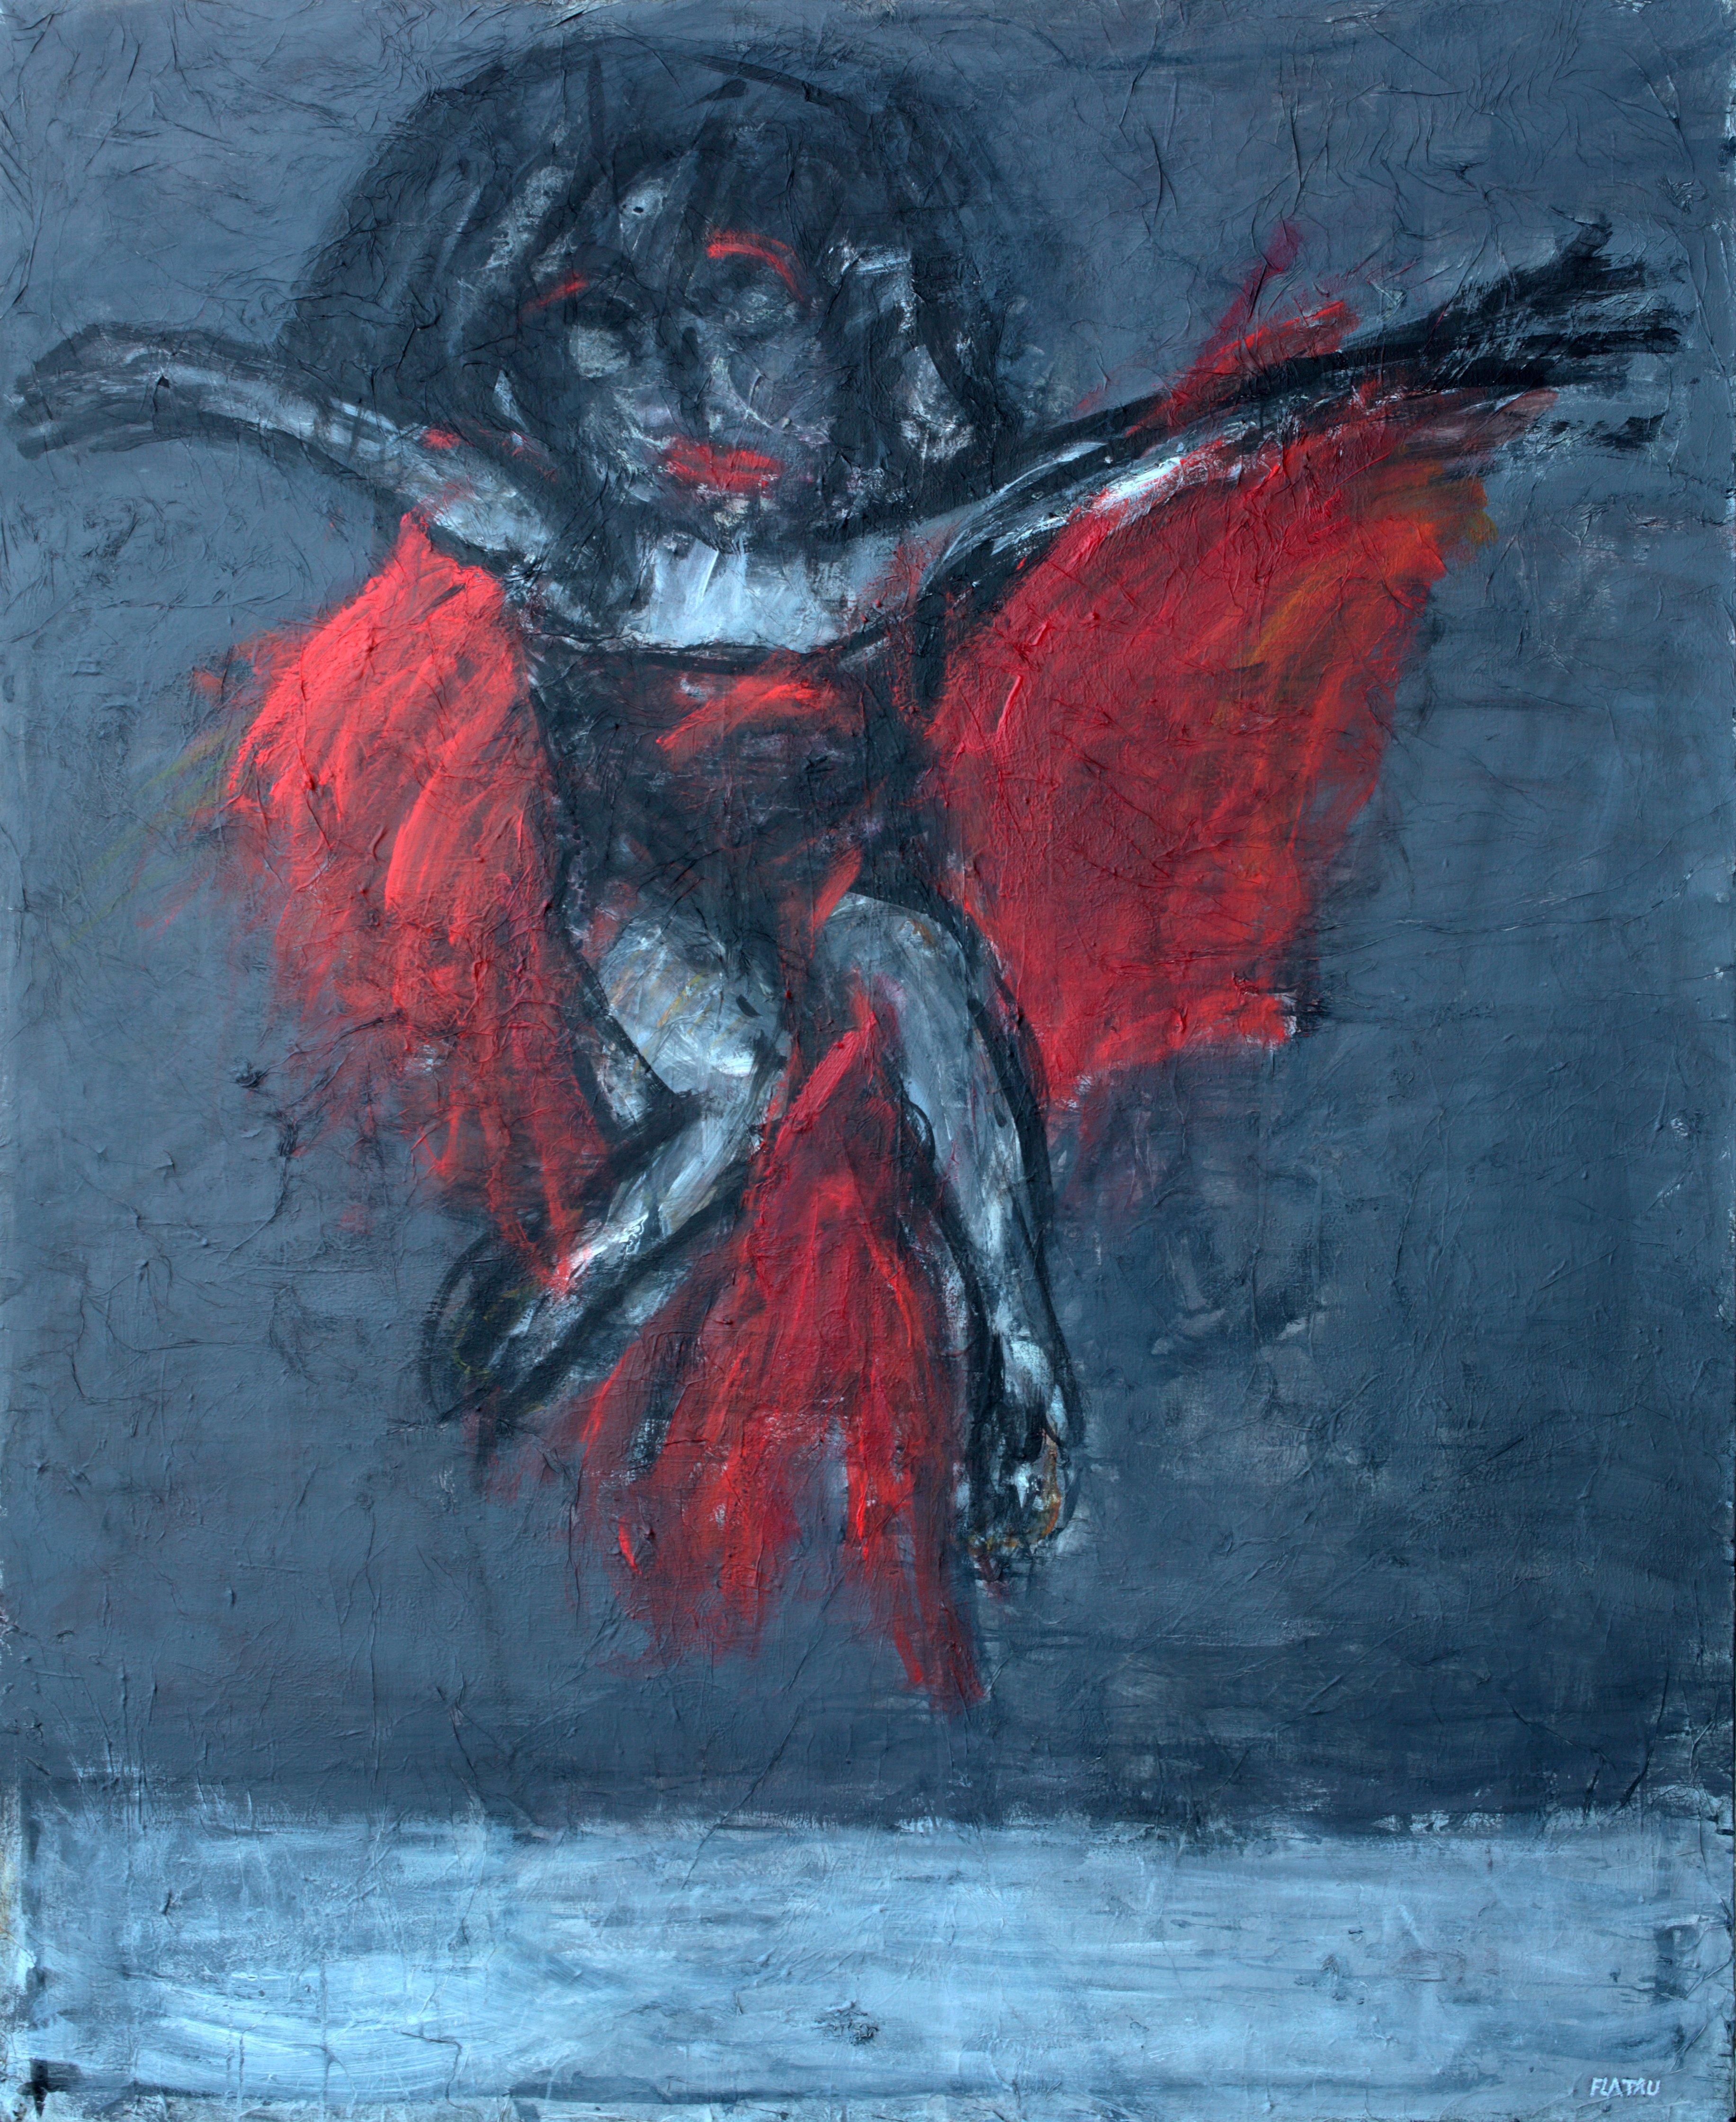 Dance with me - Joanna Flatau, zeitgenössische expressionistische Malerei des 21. Jahrhunderts